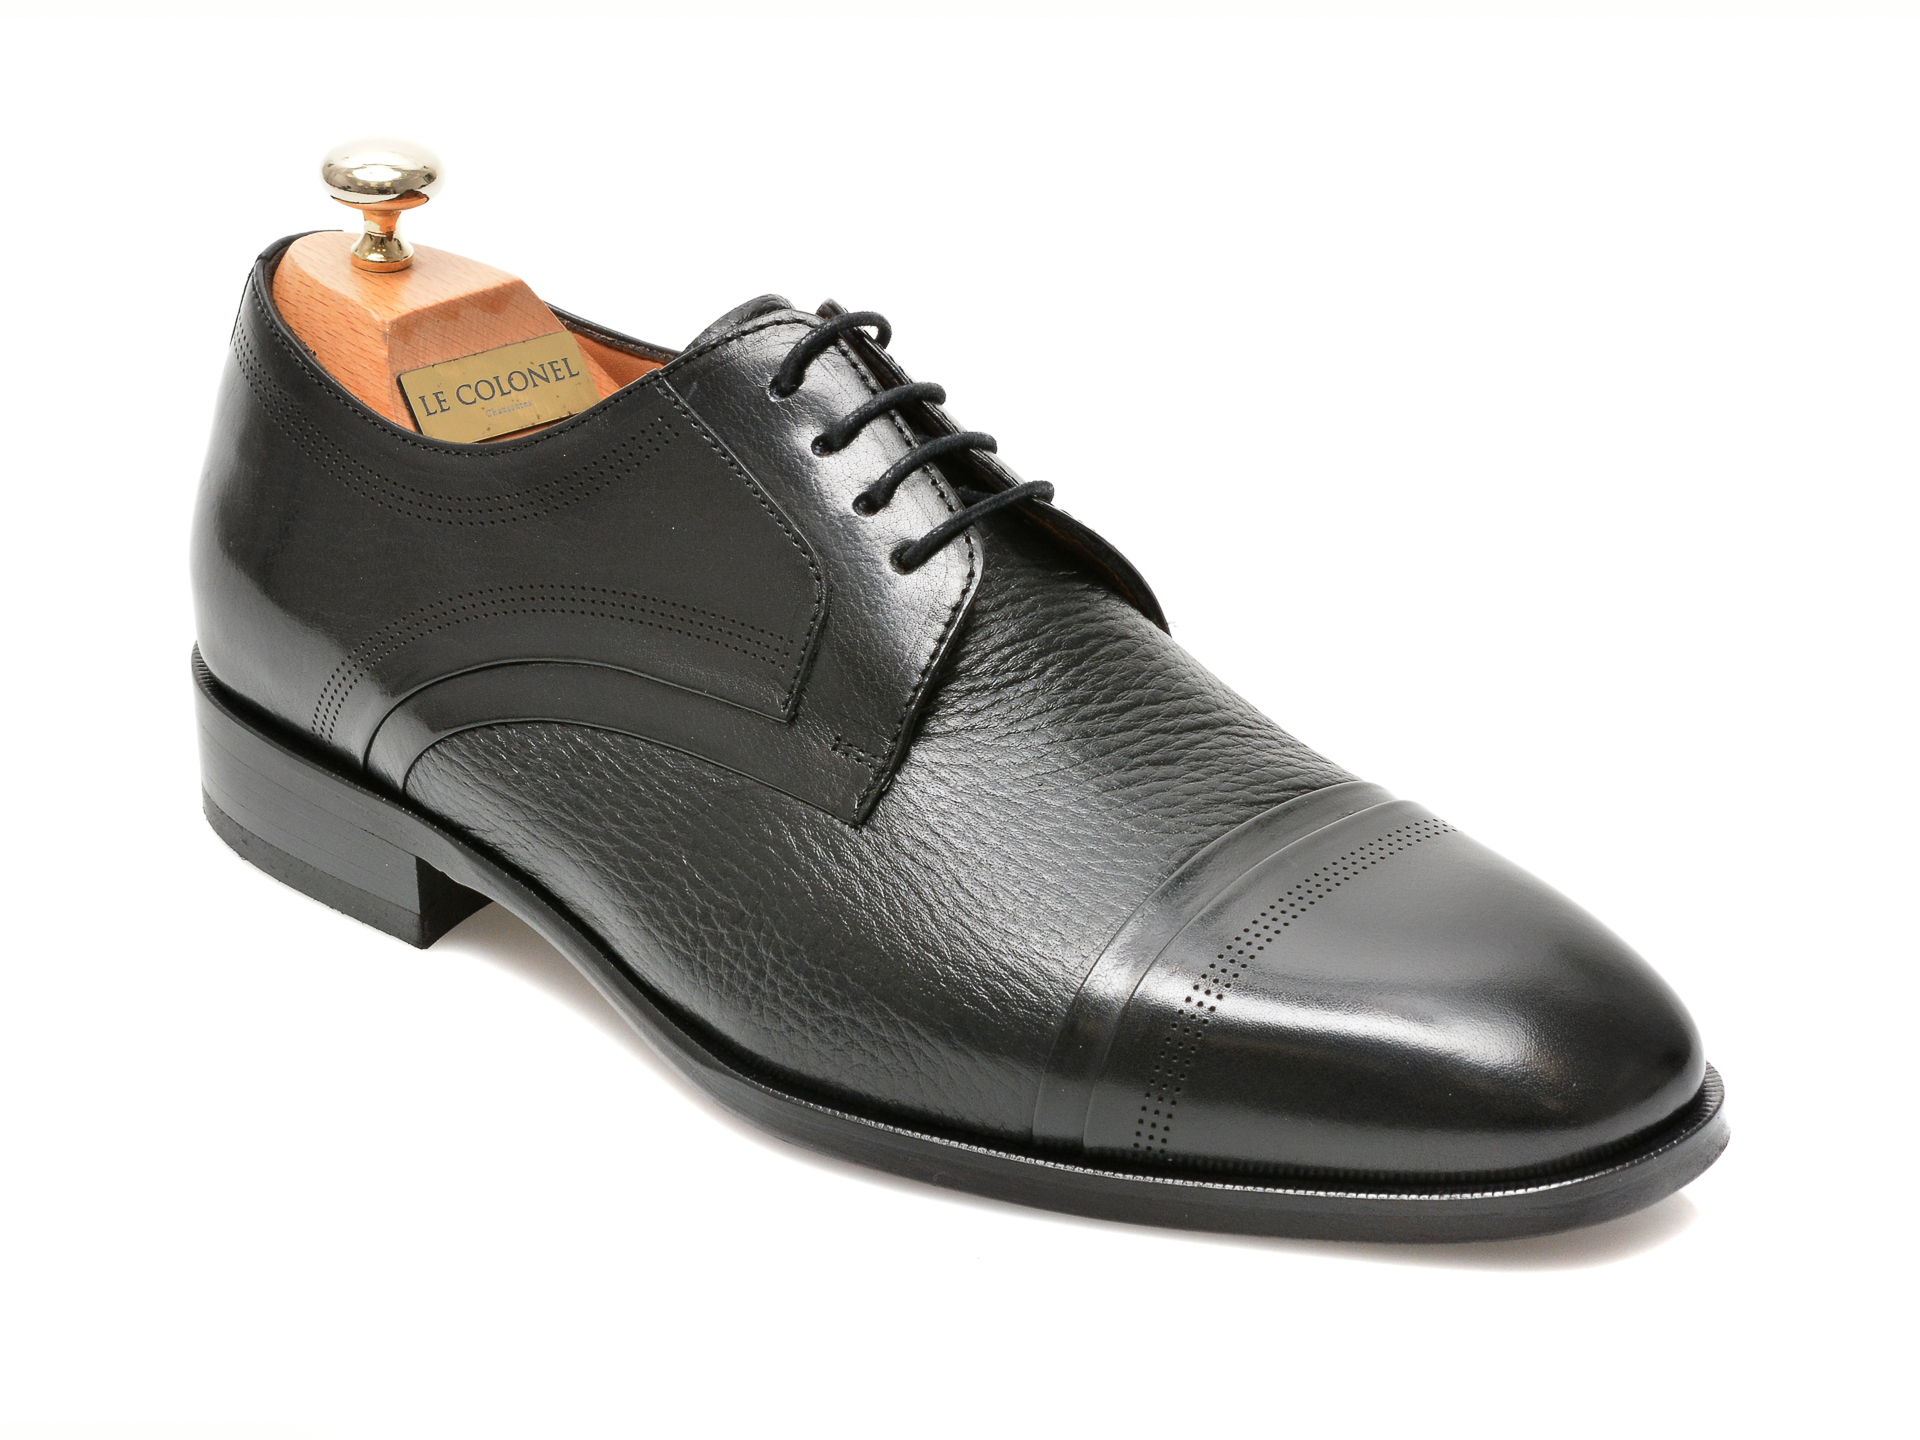 Pantofi LE COLONEL negri, 48470, din piele naturala Le Colonel imagine 2022 reducere